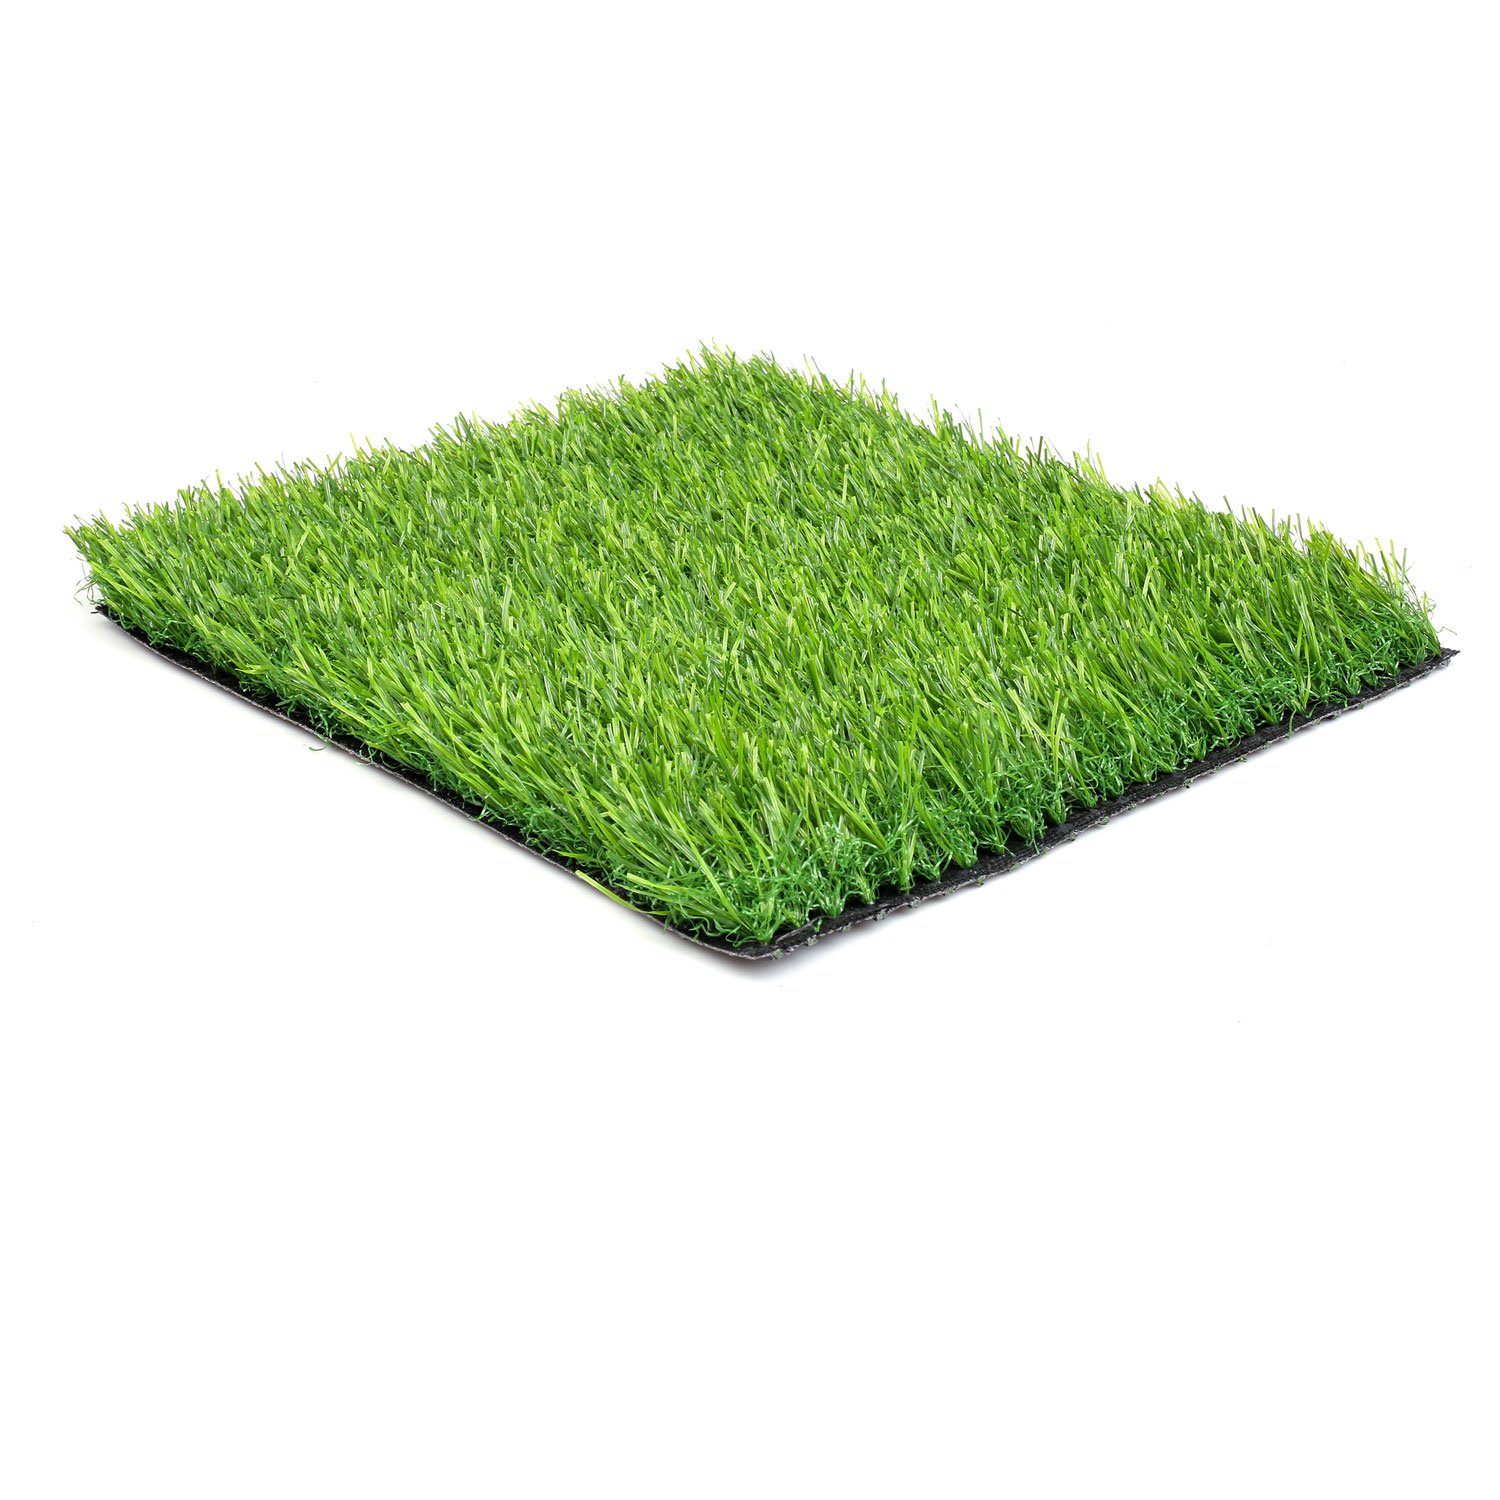 Ковер grass h225-Green. Коврик травка. Зелёный коврик травка. Коврик из трав. Купить коврик зеленый